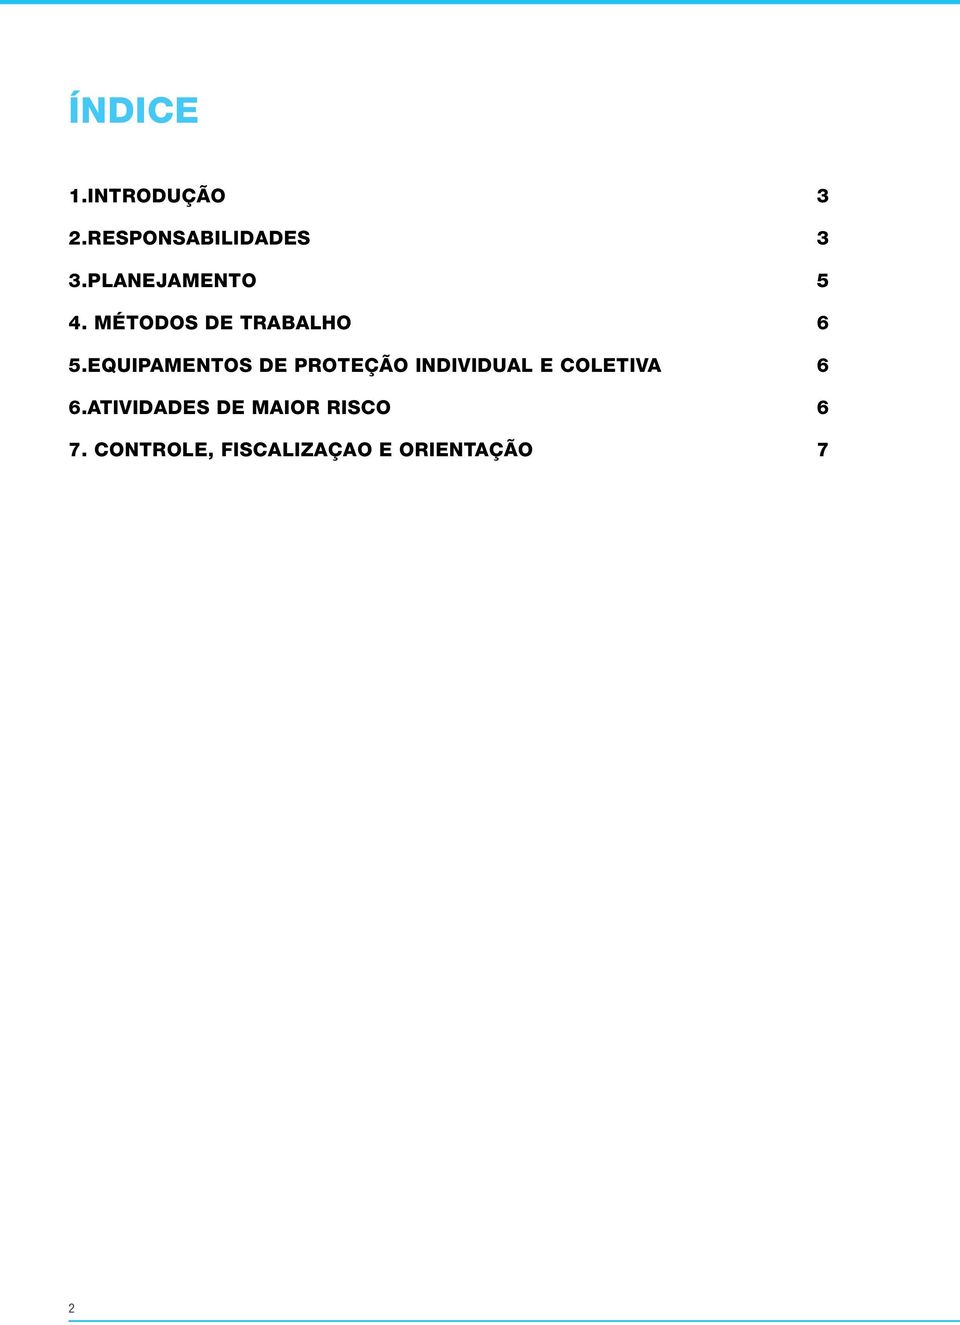 EQUIPAMENTOS DE PROTEÇÃO INDIVIDUAL E COLETIVA 6 6.